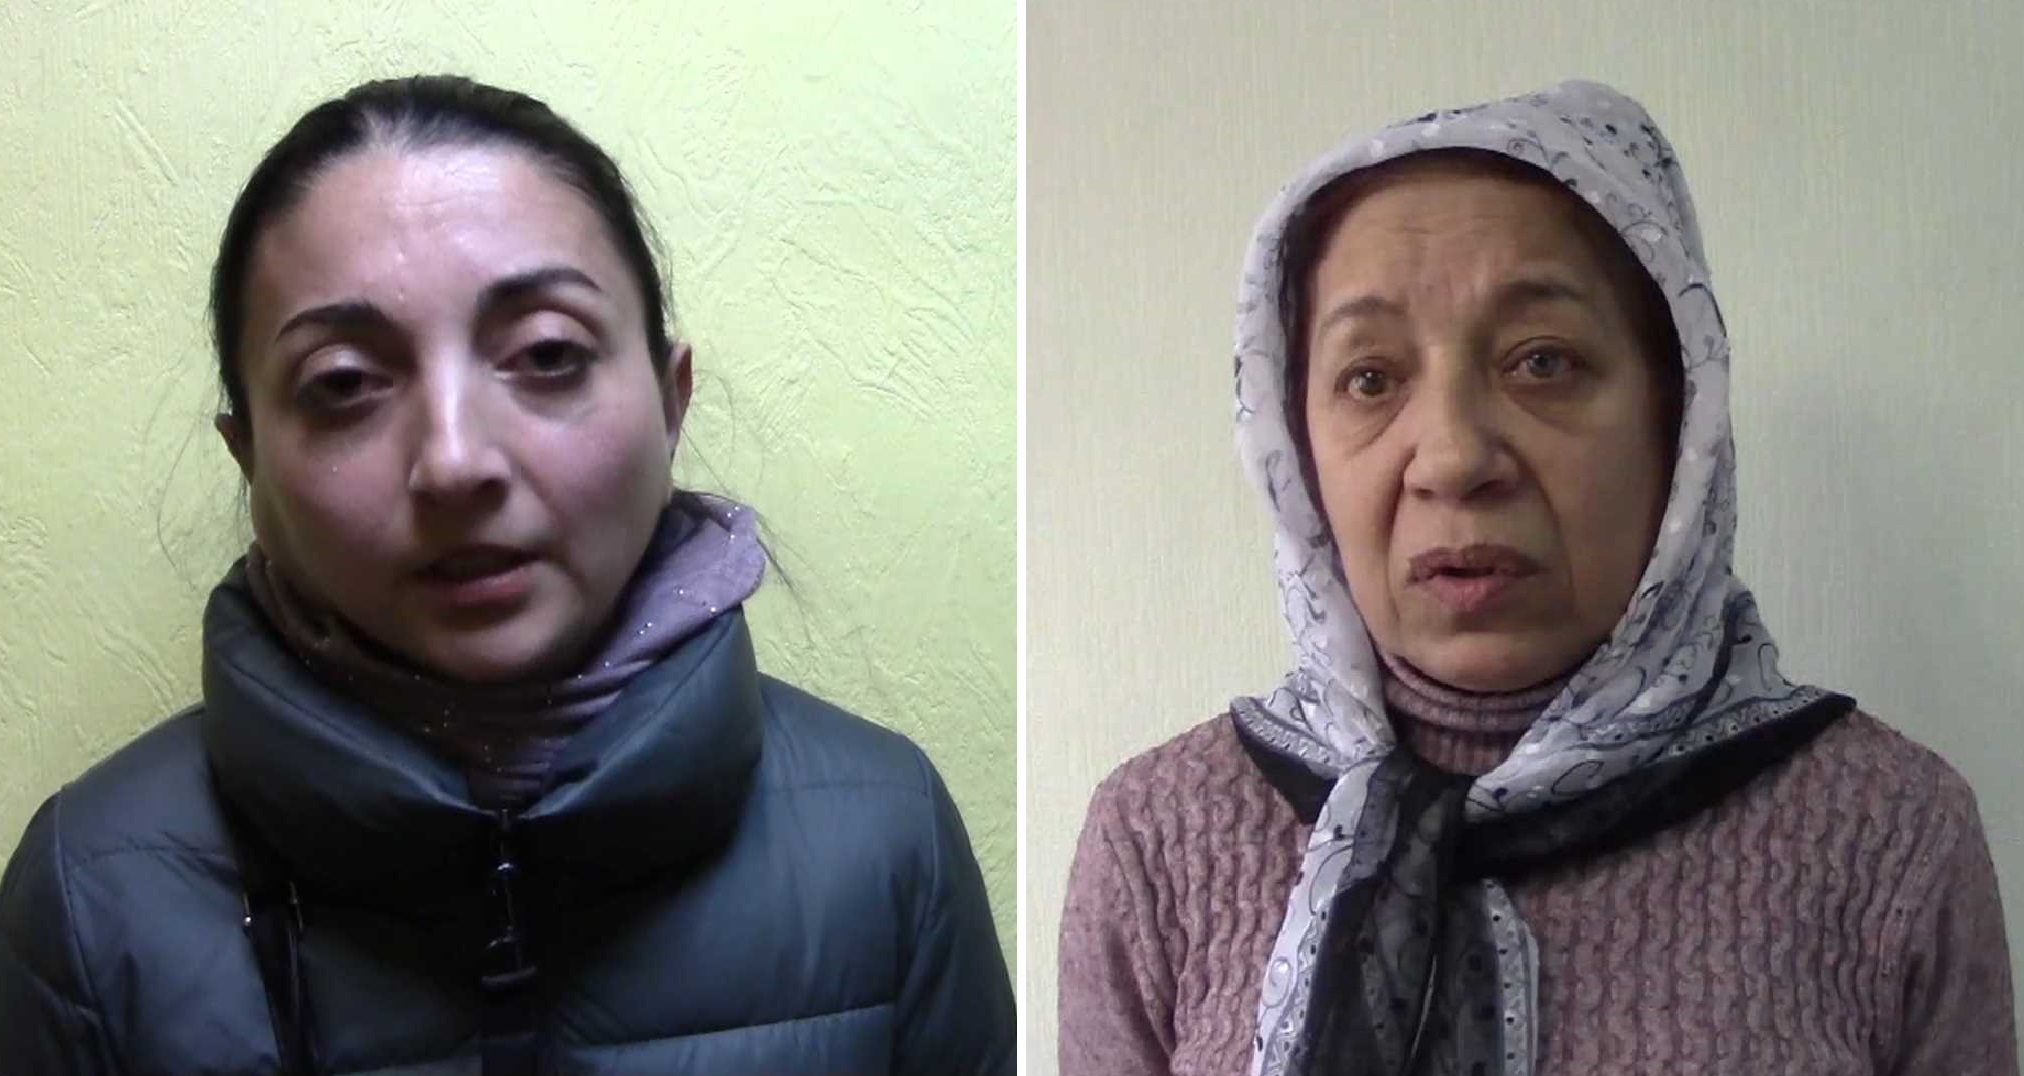 менее часа назад
                                                    
                              
              
                                                    
                    
                
                
                
                  
                    
                      Две жительницы Костромы попались на краже в Удмуртии                    
                    
                      Вместе с ними по подозрению в совершении преступления задержаны их подельницы с Урала.